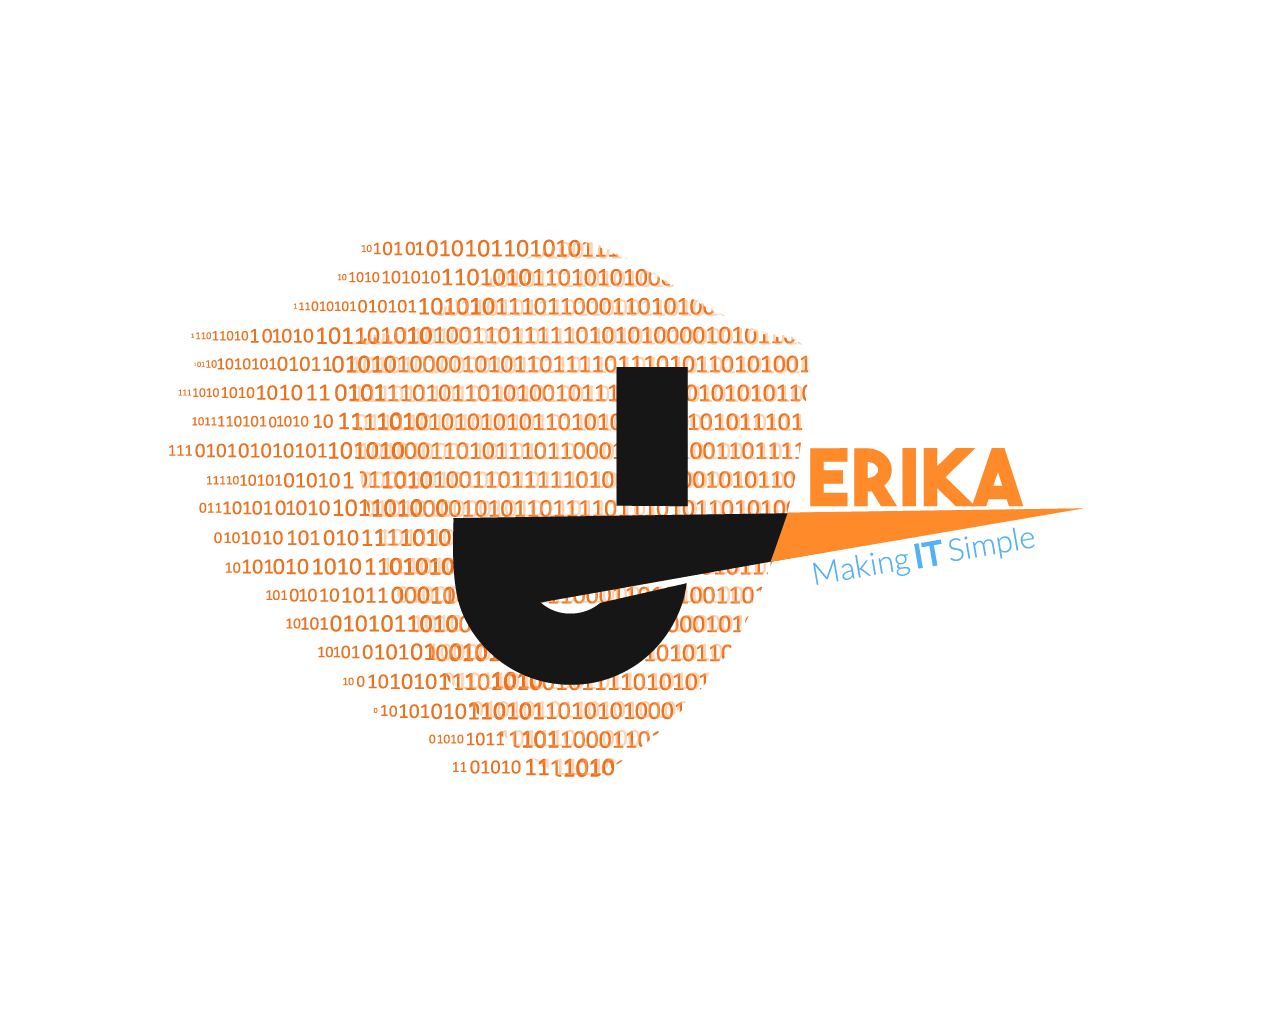 Jerika Logo - About Us - Jerika Inc.